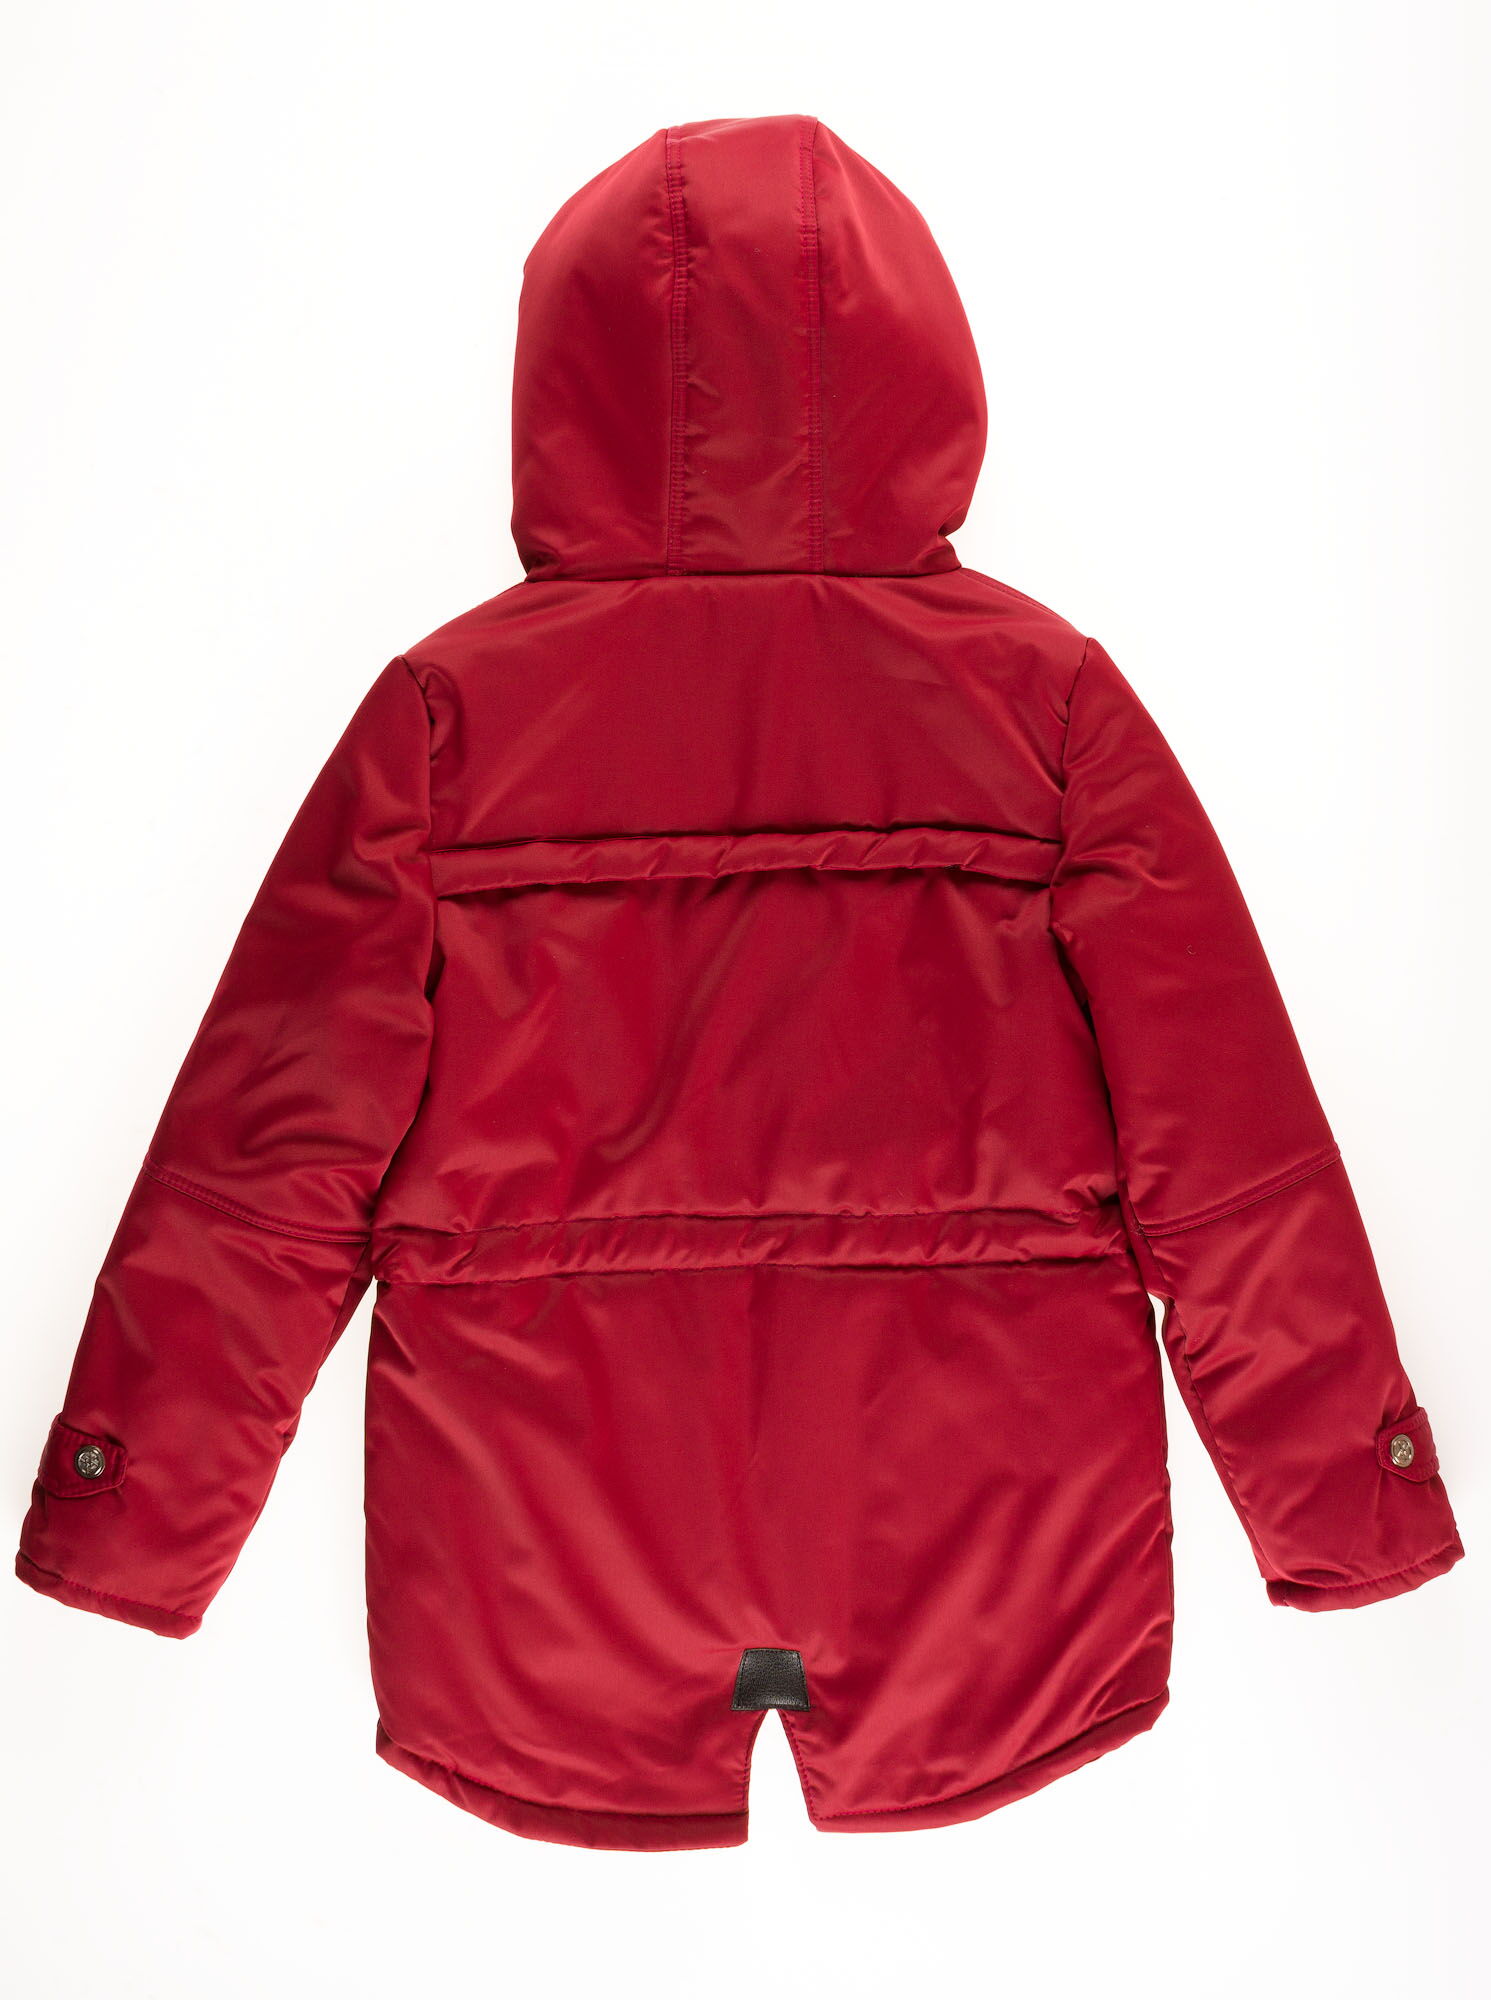 Куртка для мальчика ОДЯГАЙКО бордовая 22149О - размеры